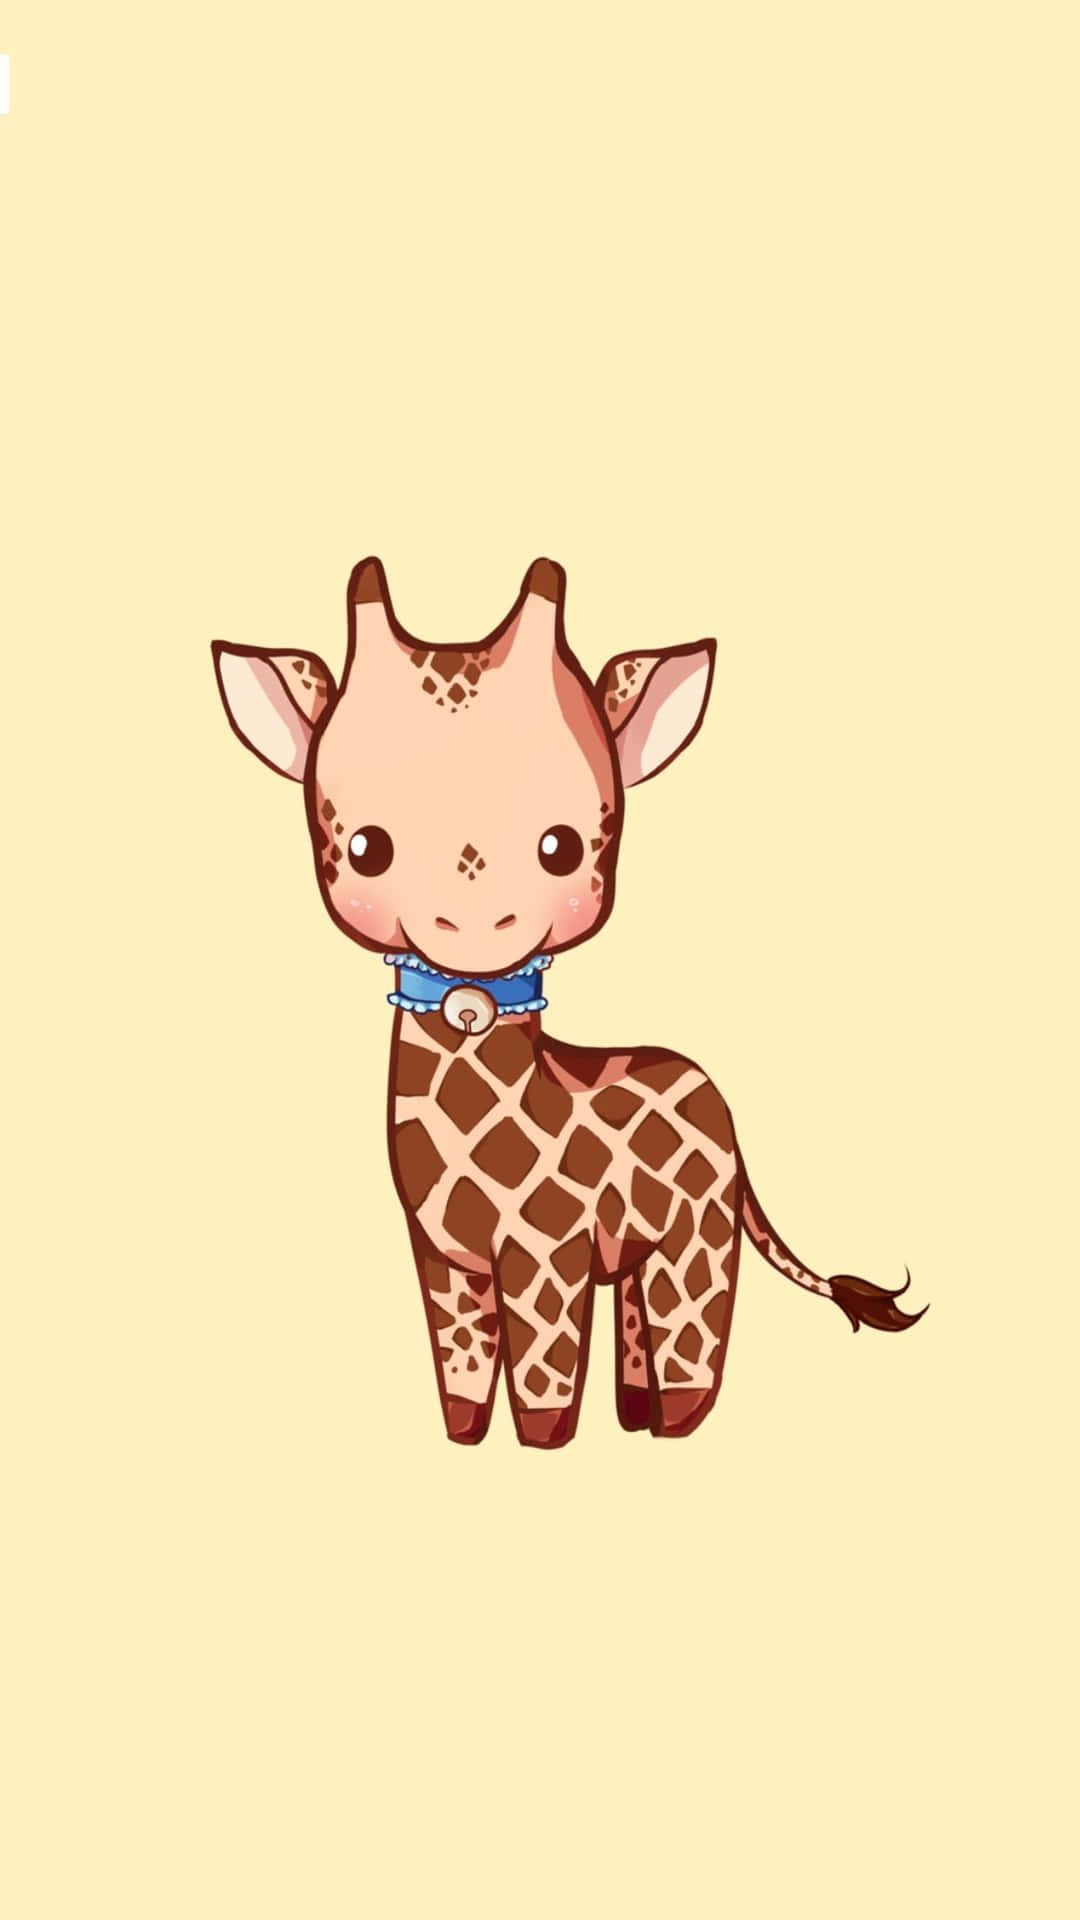 Cute Giraffe Cartoon In Collar On Yellow Picture